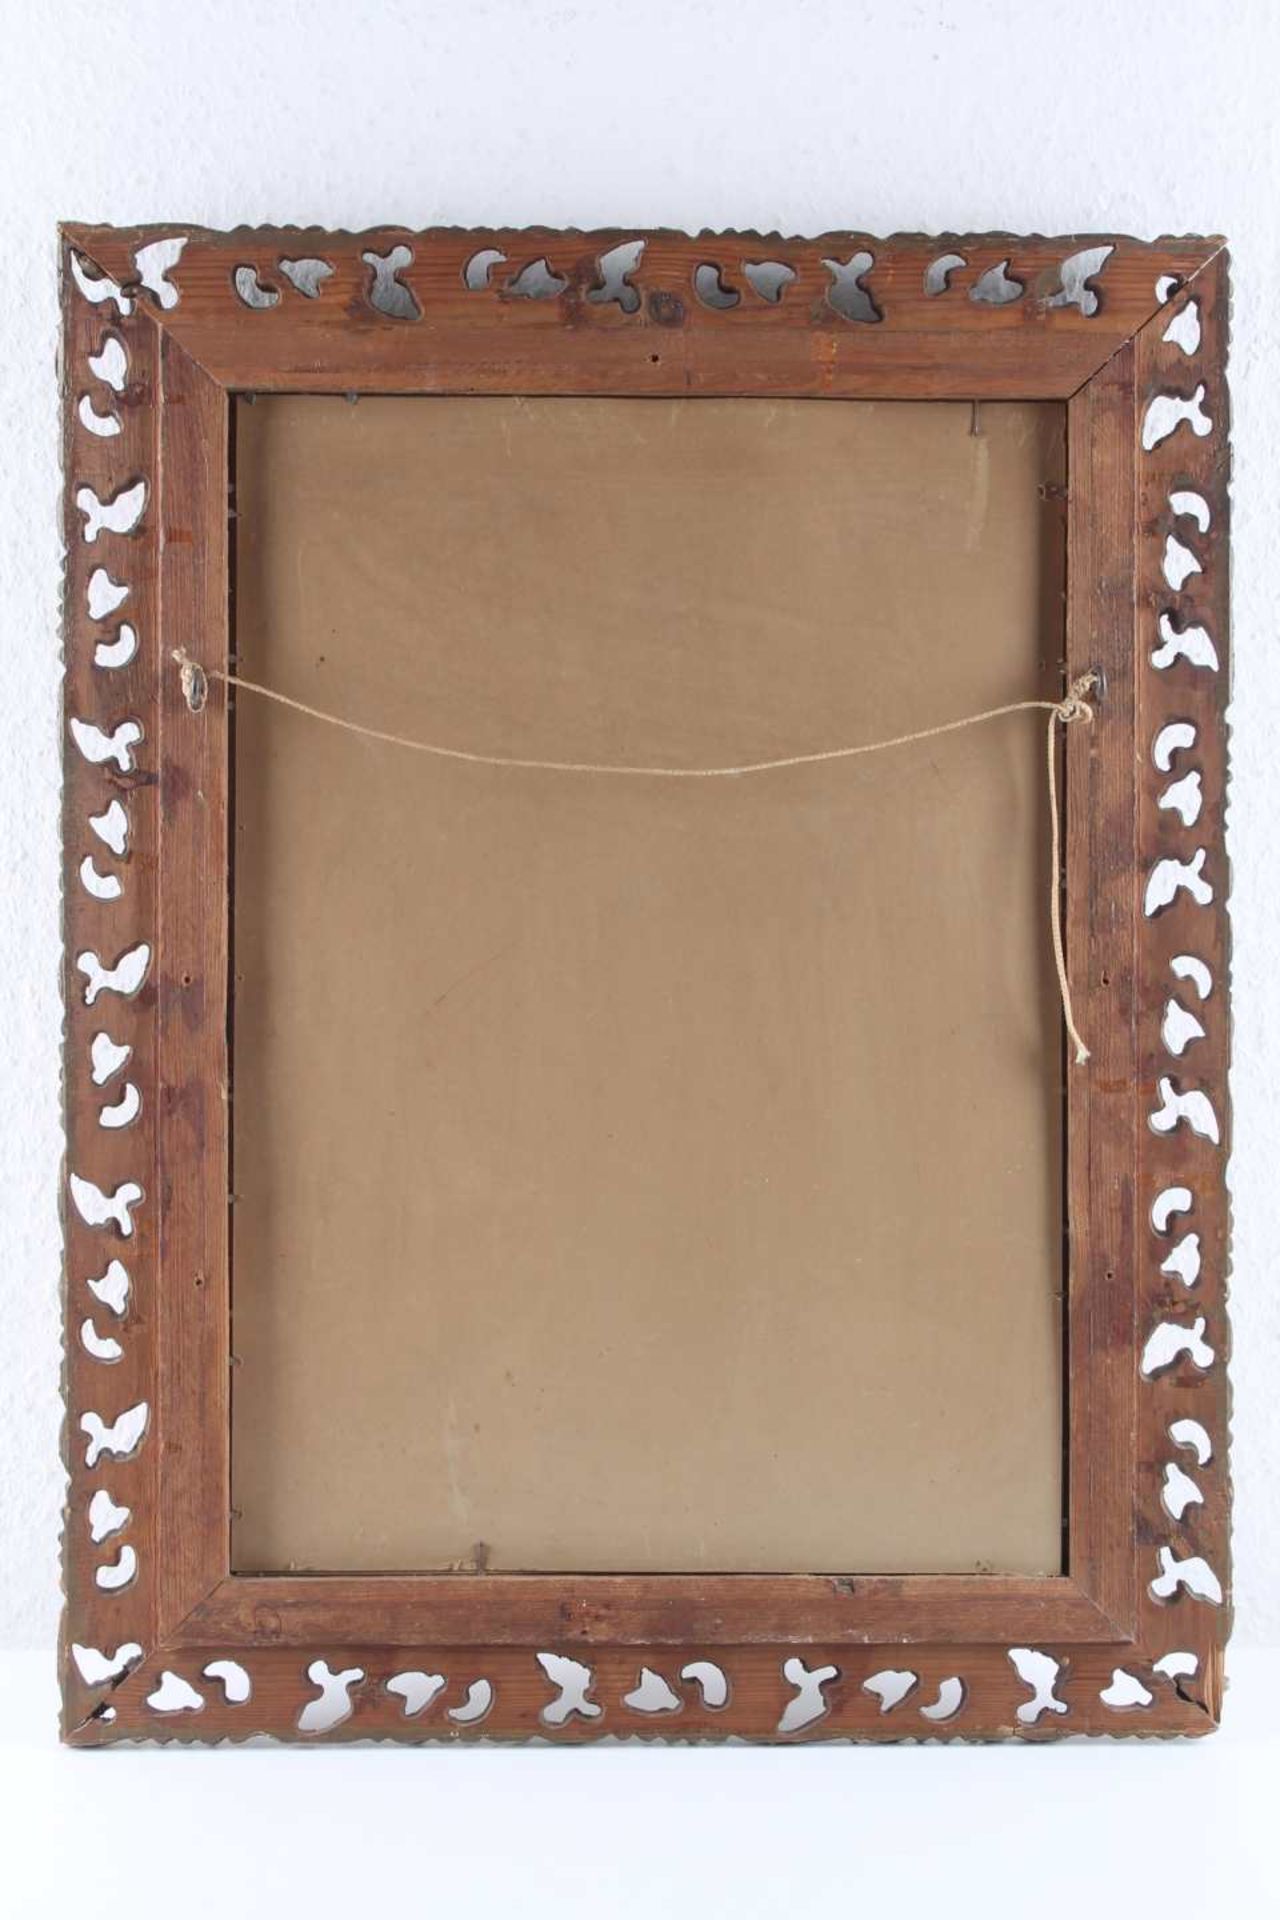 Florentiner Bilderrahmen, florentine wooden frame with mirror, - Image 3 of 3